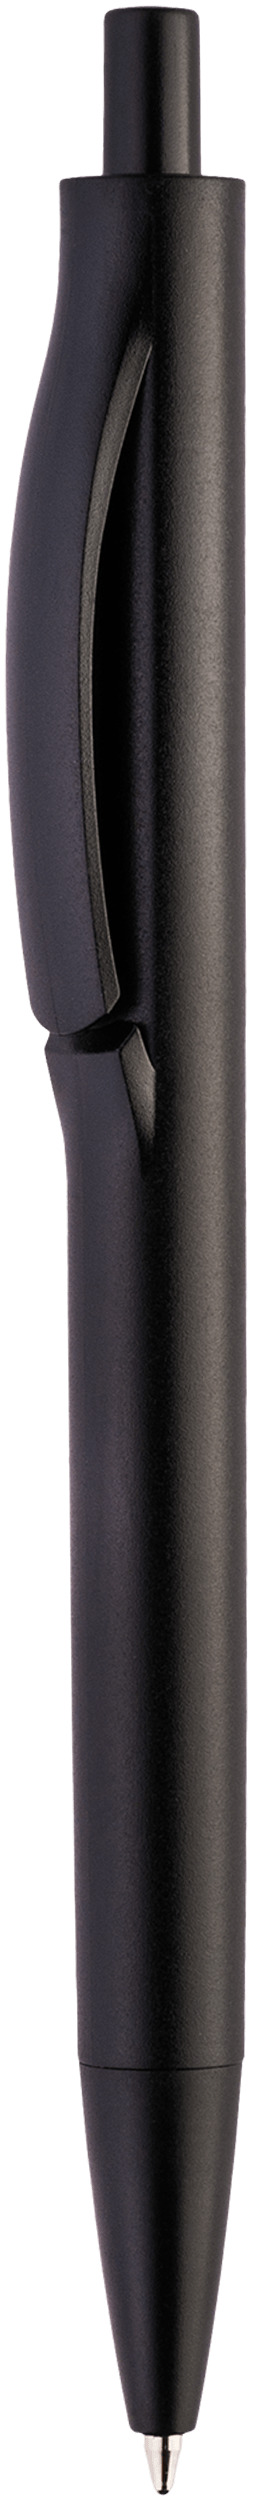 Шариковая ручка Igla Color, чёрная